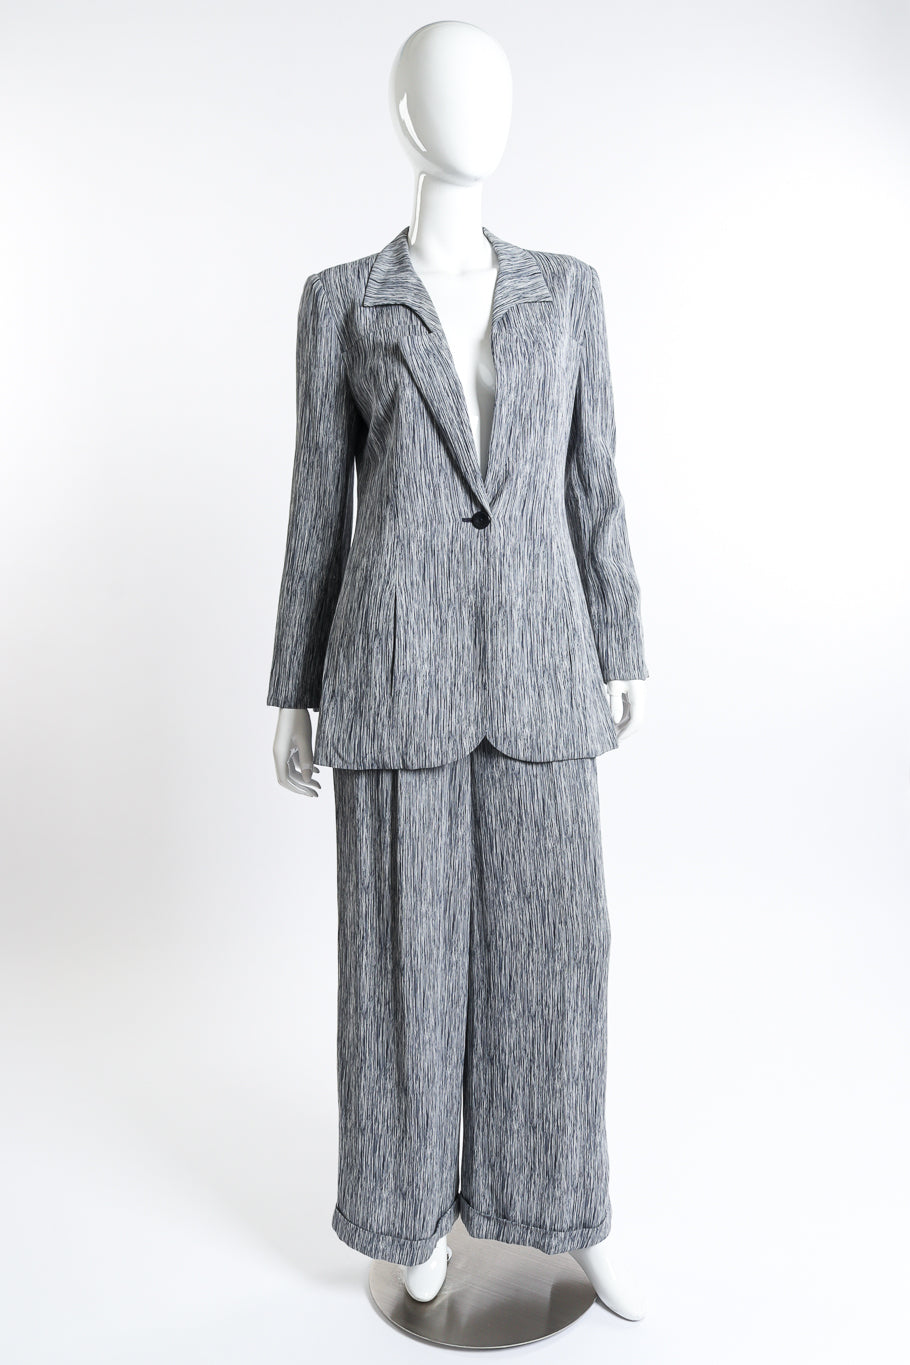 Chloé Woodgrain Stripe Jacket & Pant Set front on mannequin @recess la